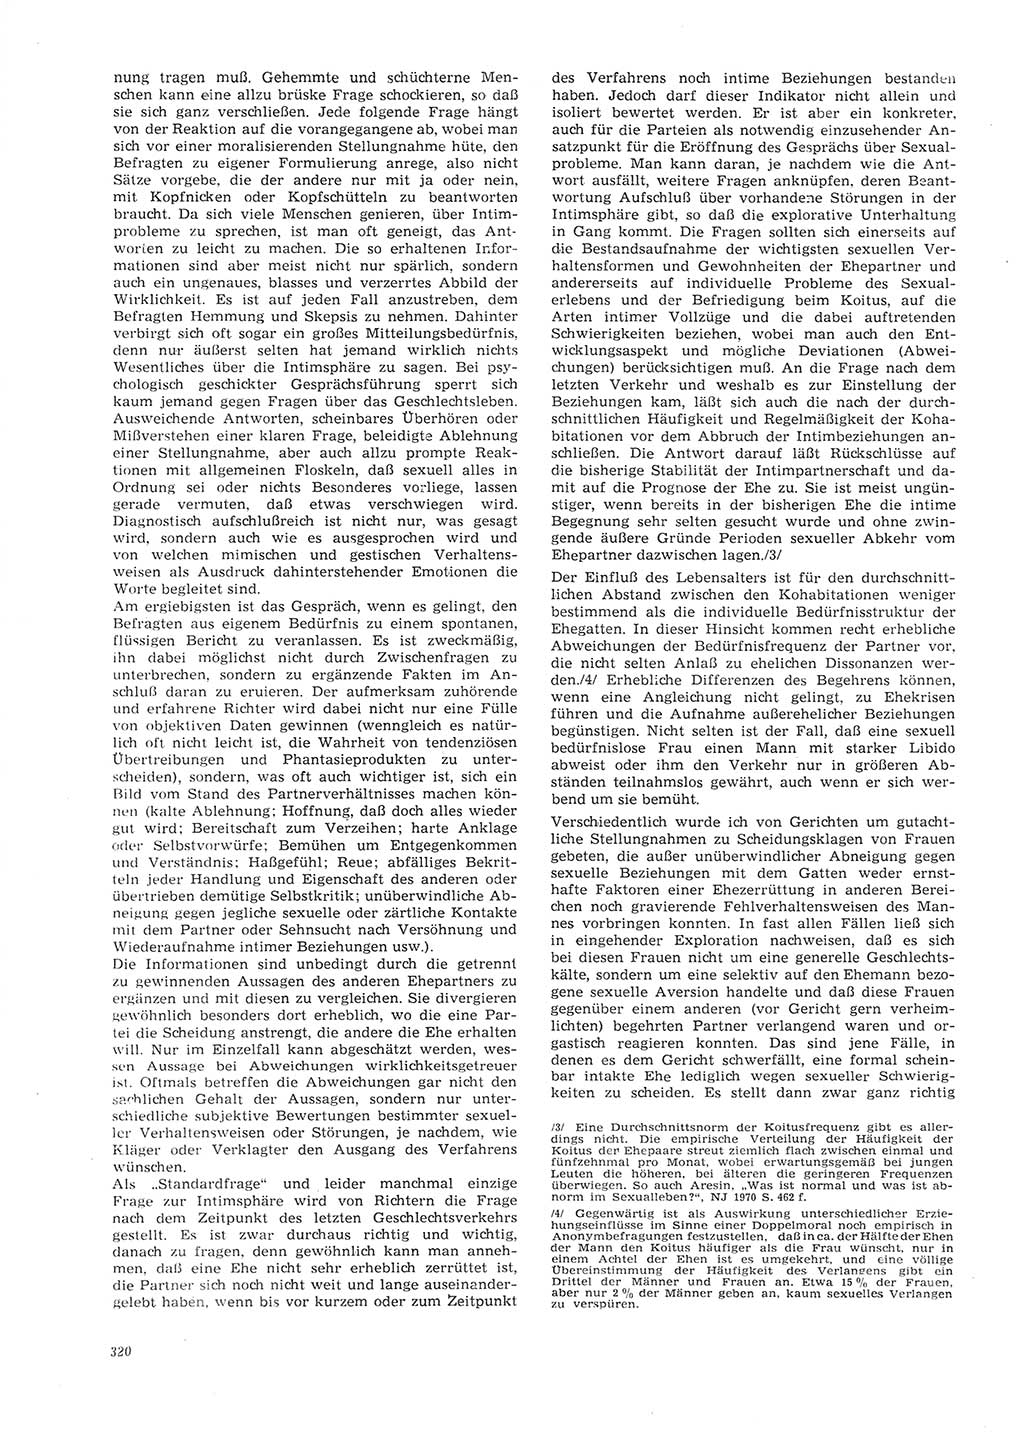 Neue Justiz (NJ), Zeitschrift für Recht und Rechtswissenschaft [Deutsche Demokratische Republik (DDR)], 26. Jahrgang 1972, Seite 320 (NJ DDR 1972, S. 320)